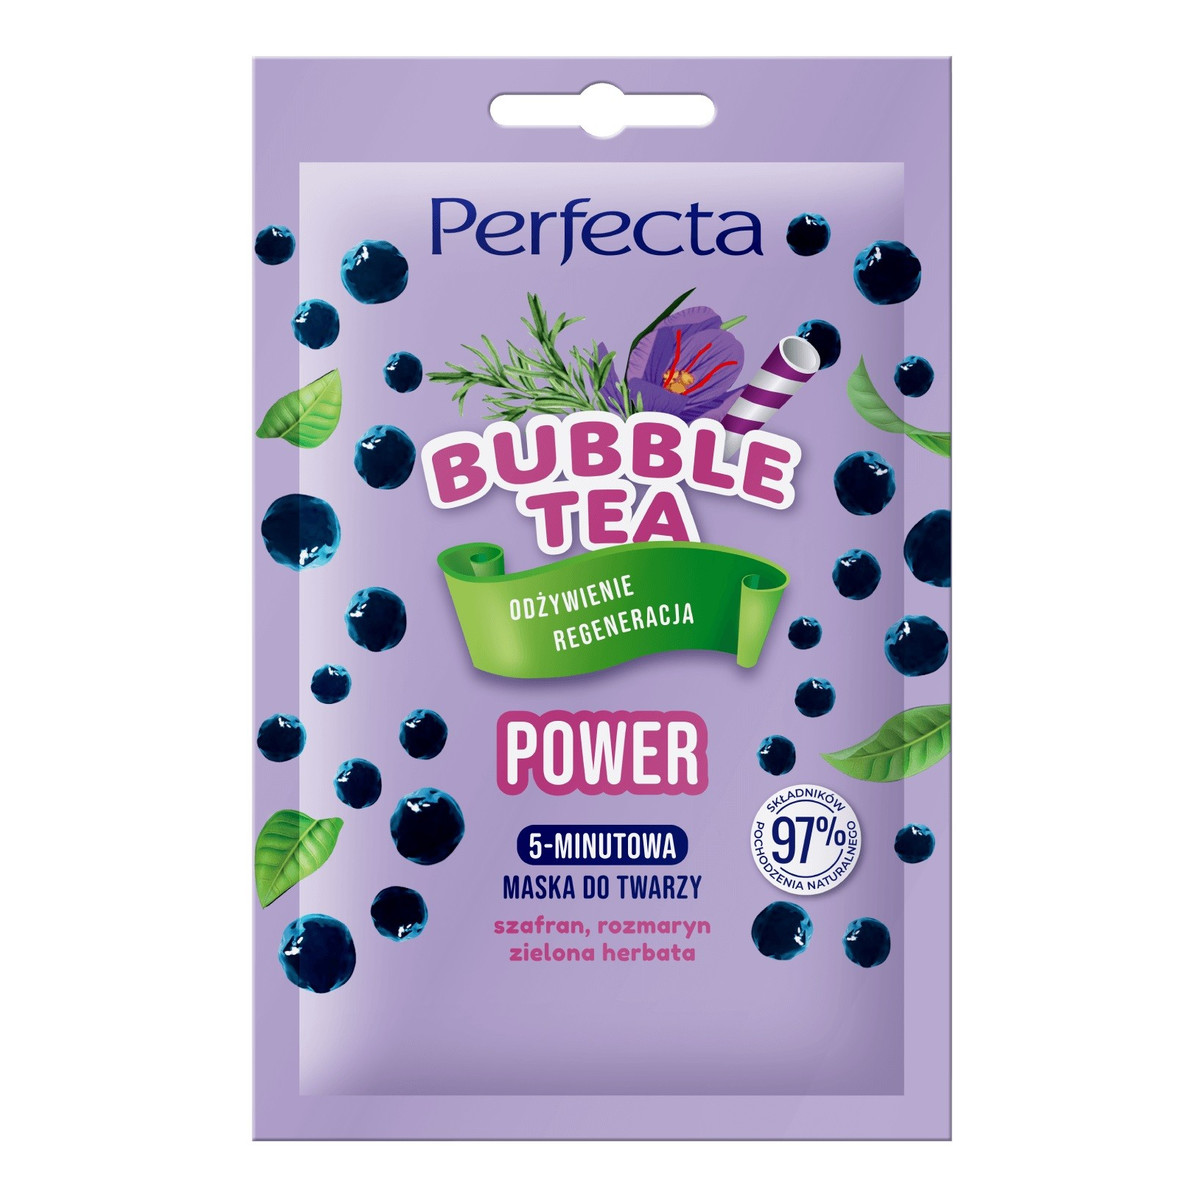 Perfecta Bubble Tea 5-Minutowa Maska do twarzy Power - odżywienie i regeneracja 10ml